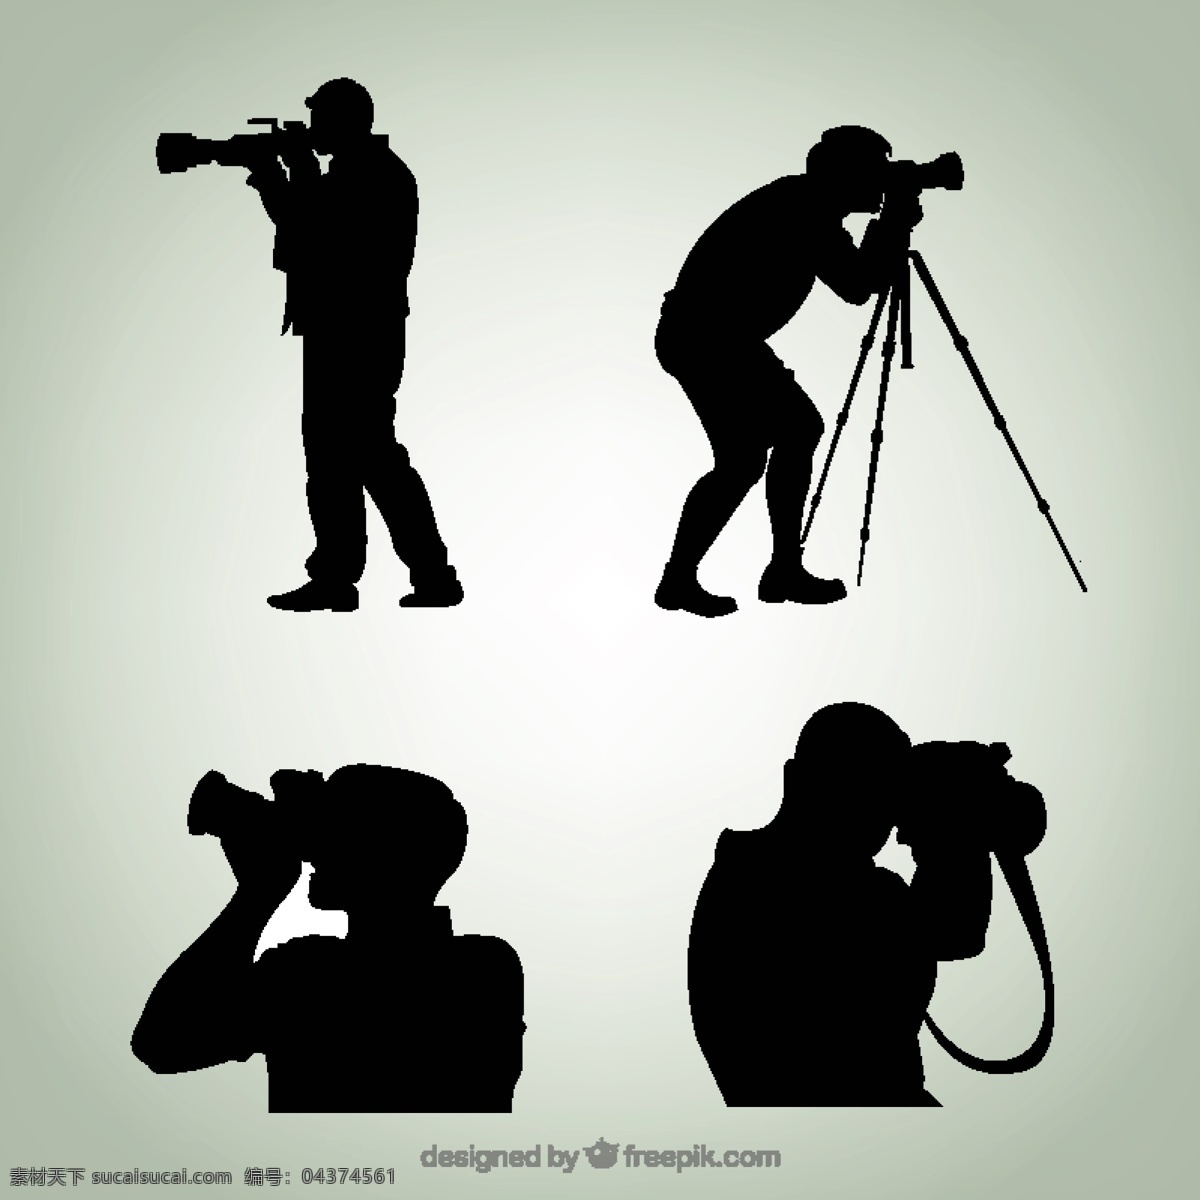 手绘 摄影师 剪影 人员 相机 技术 照片 数字 黑色 创意 工作室 专业 配件 摄影师剪影